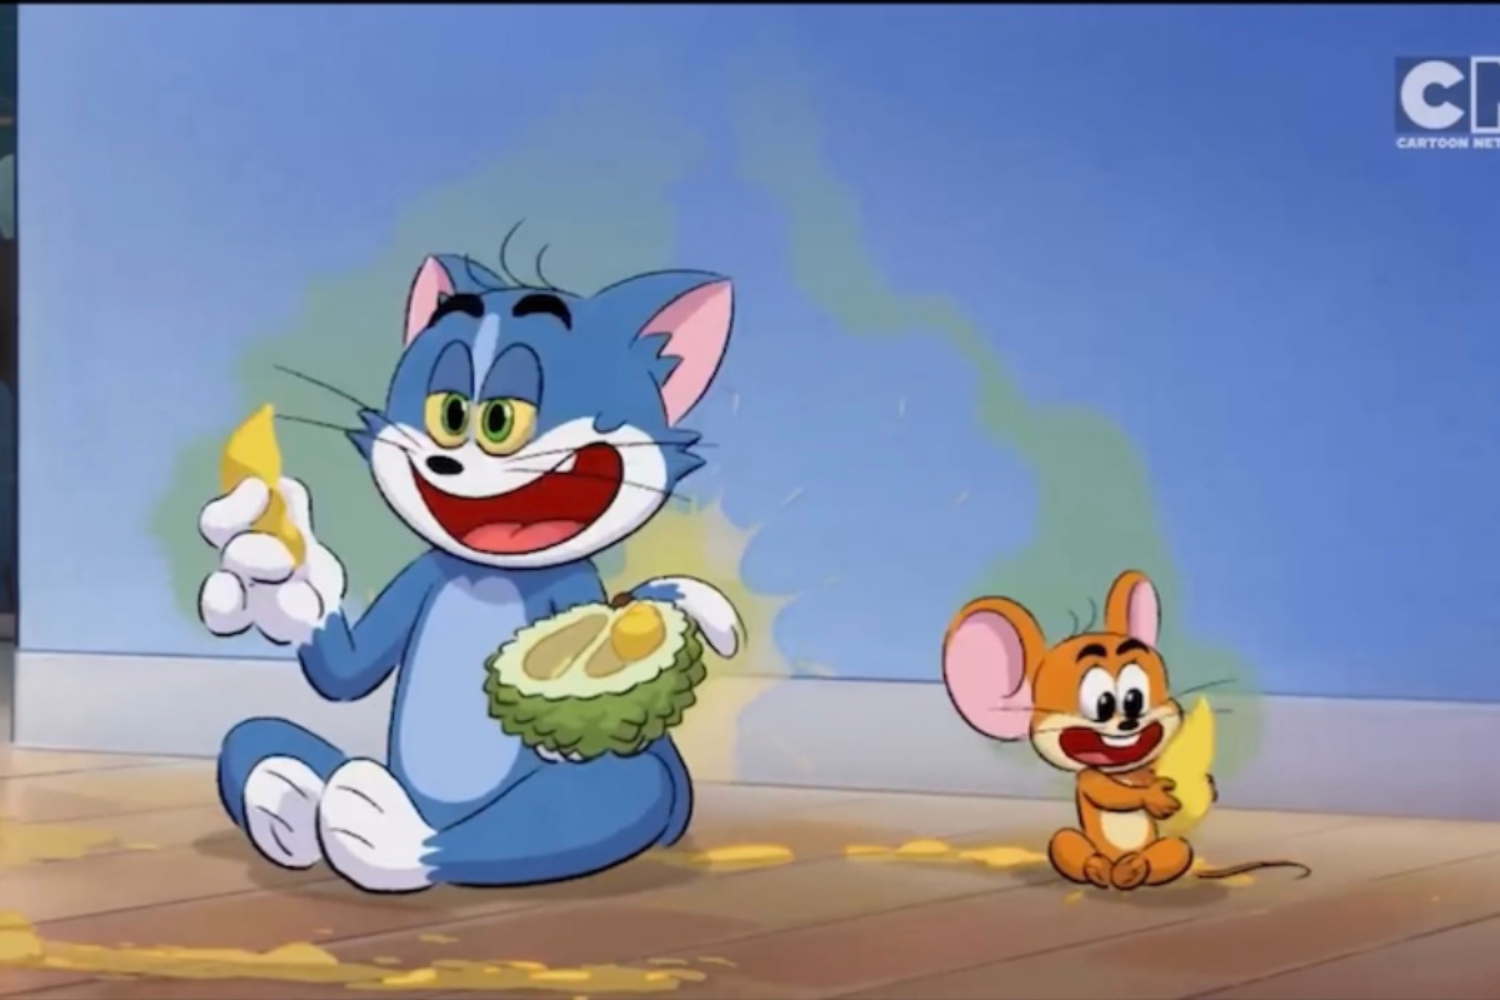 Có thể bạn chưa biết: Cặp đôi Tom & Jerry năm nay đã bước sang tuổi 76 rồi  đấy!